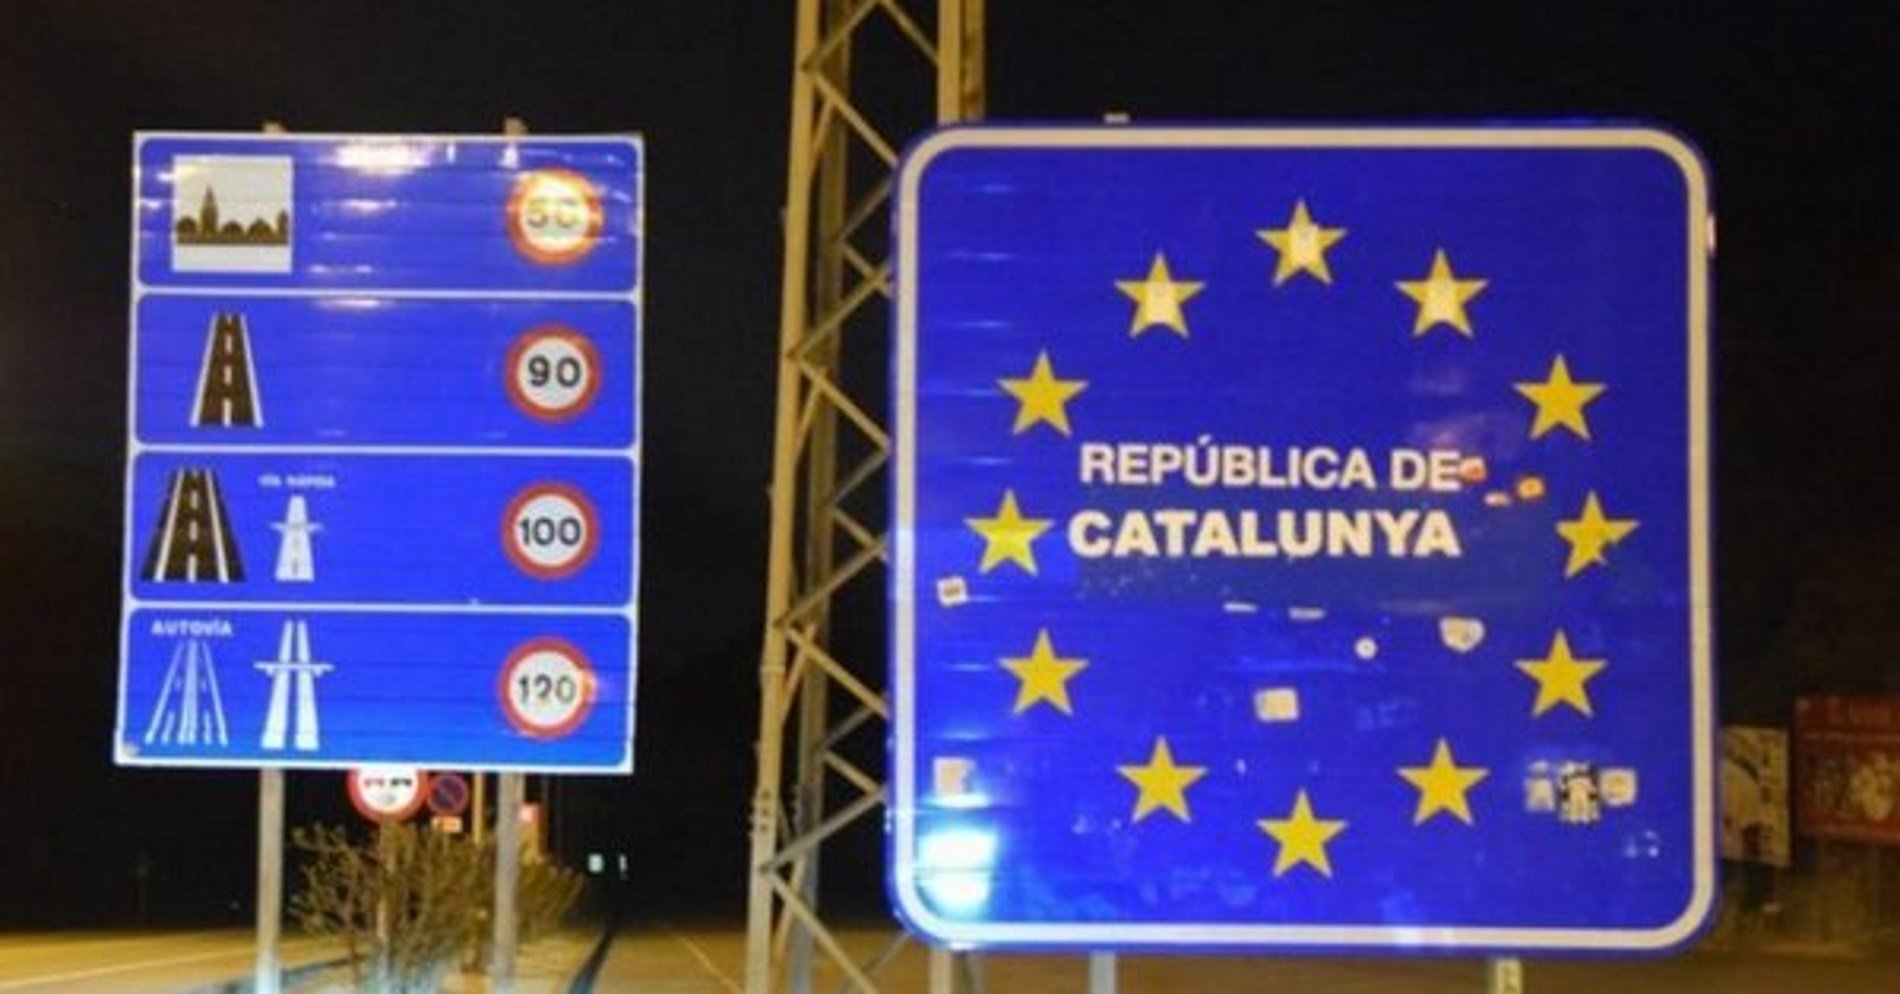 El cartell de la frontera del Pertús anuncia la "República de Catalunya"